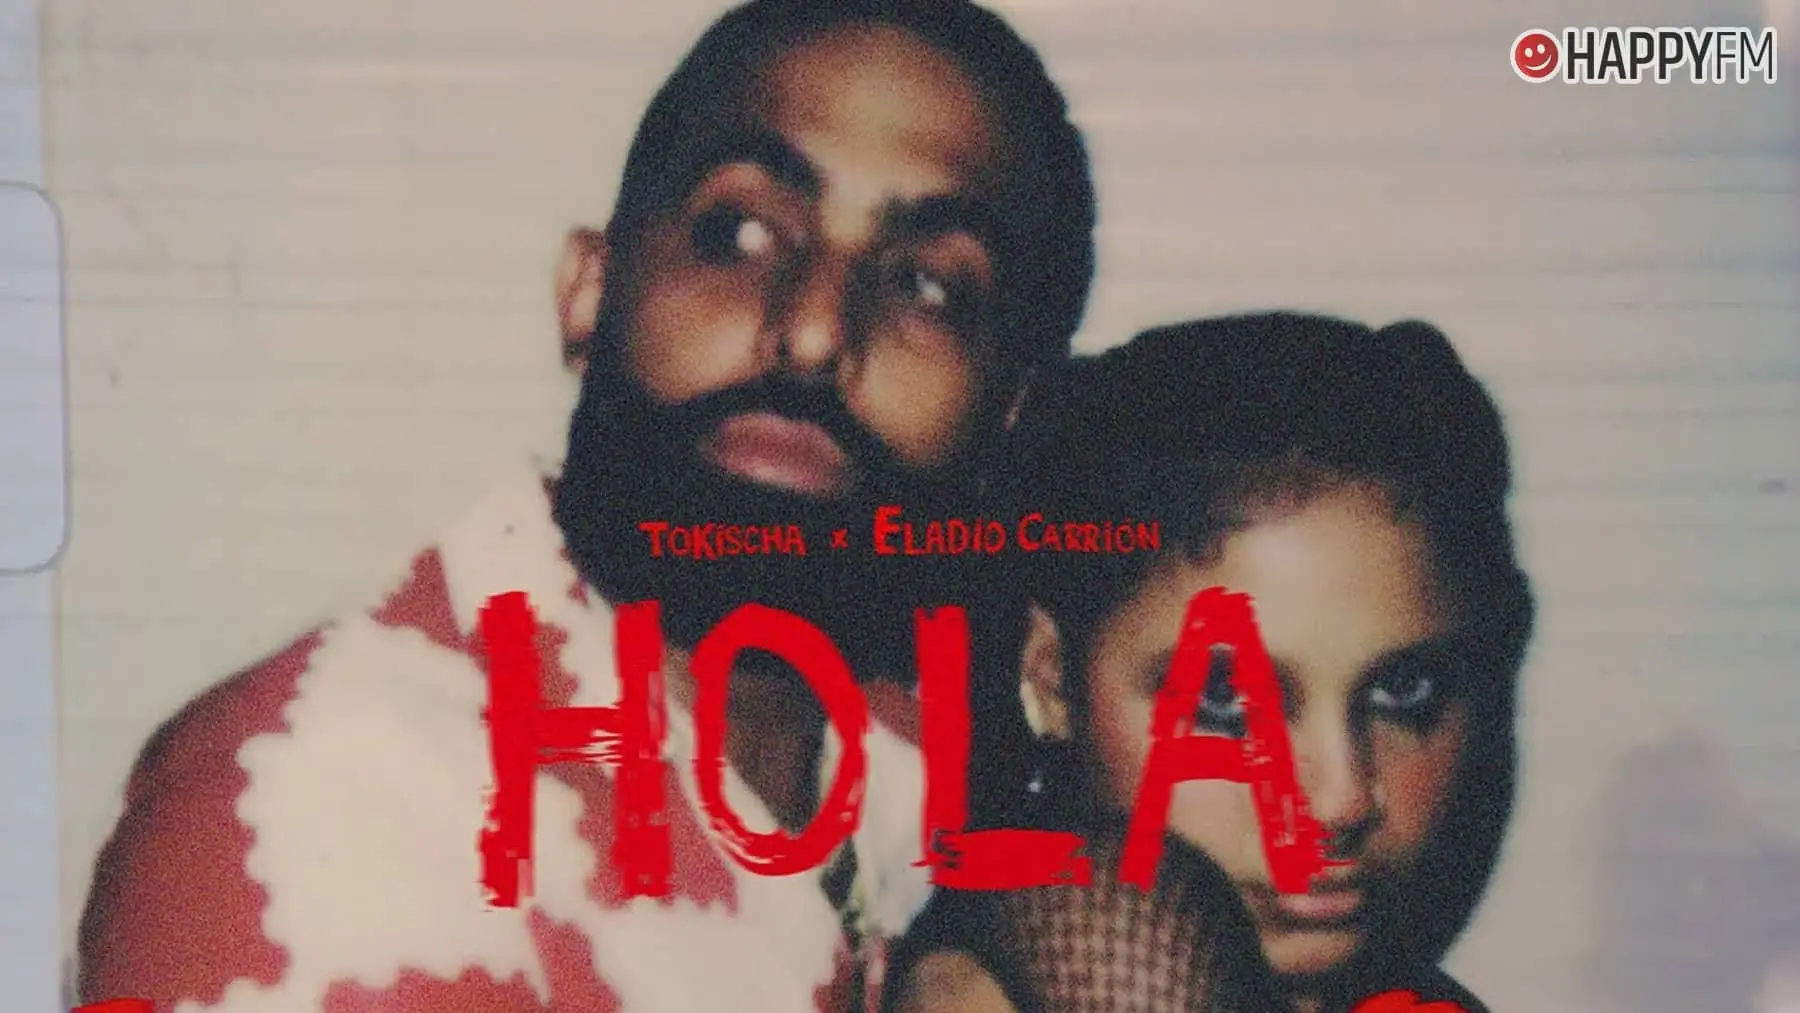 Hola', de Tokischa y Eladio Carrión: letra y vídeo